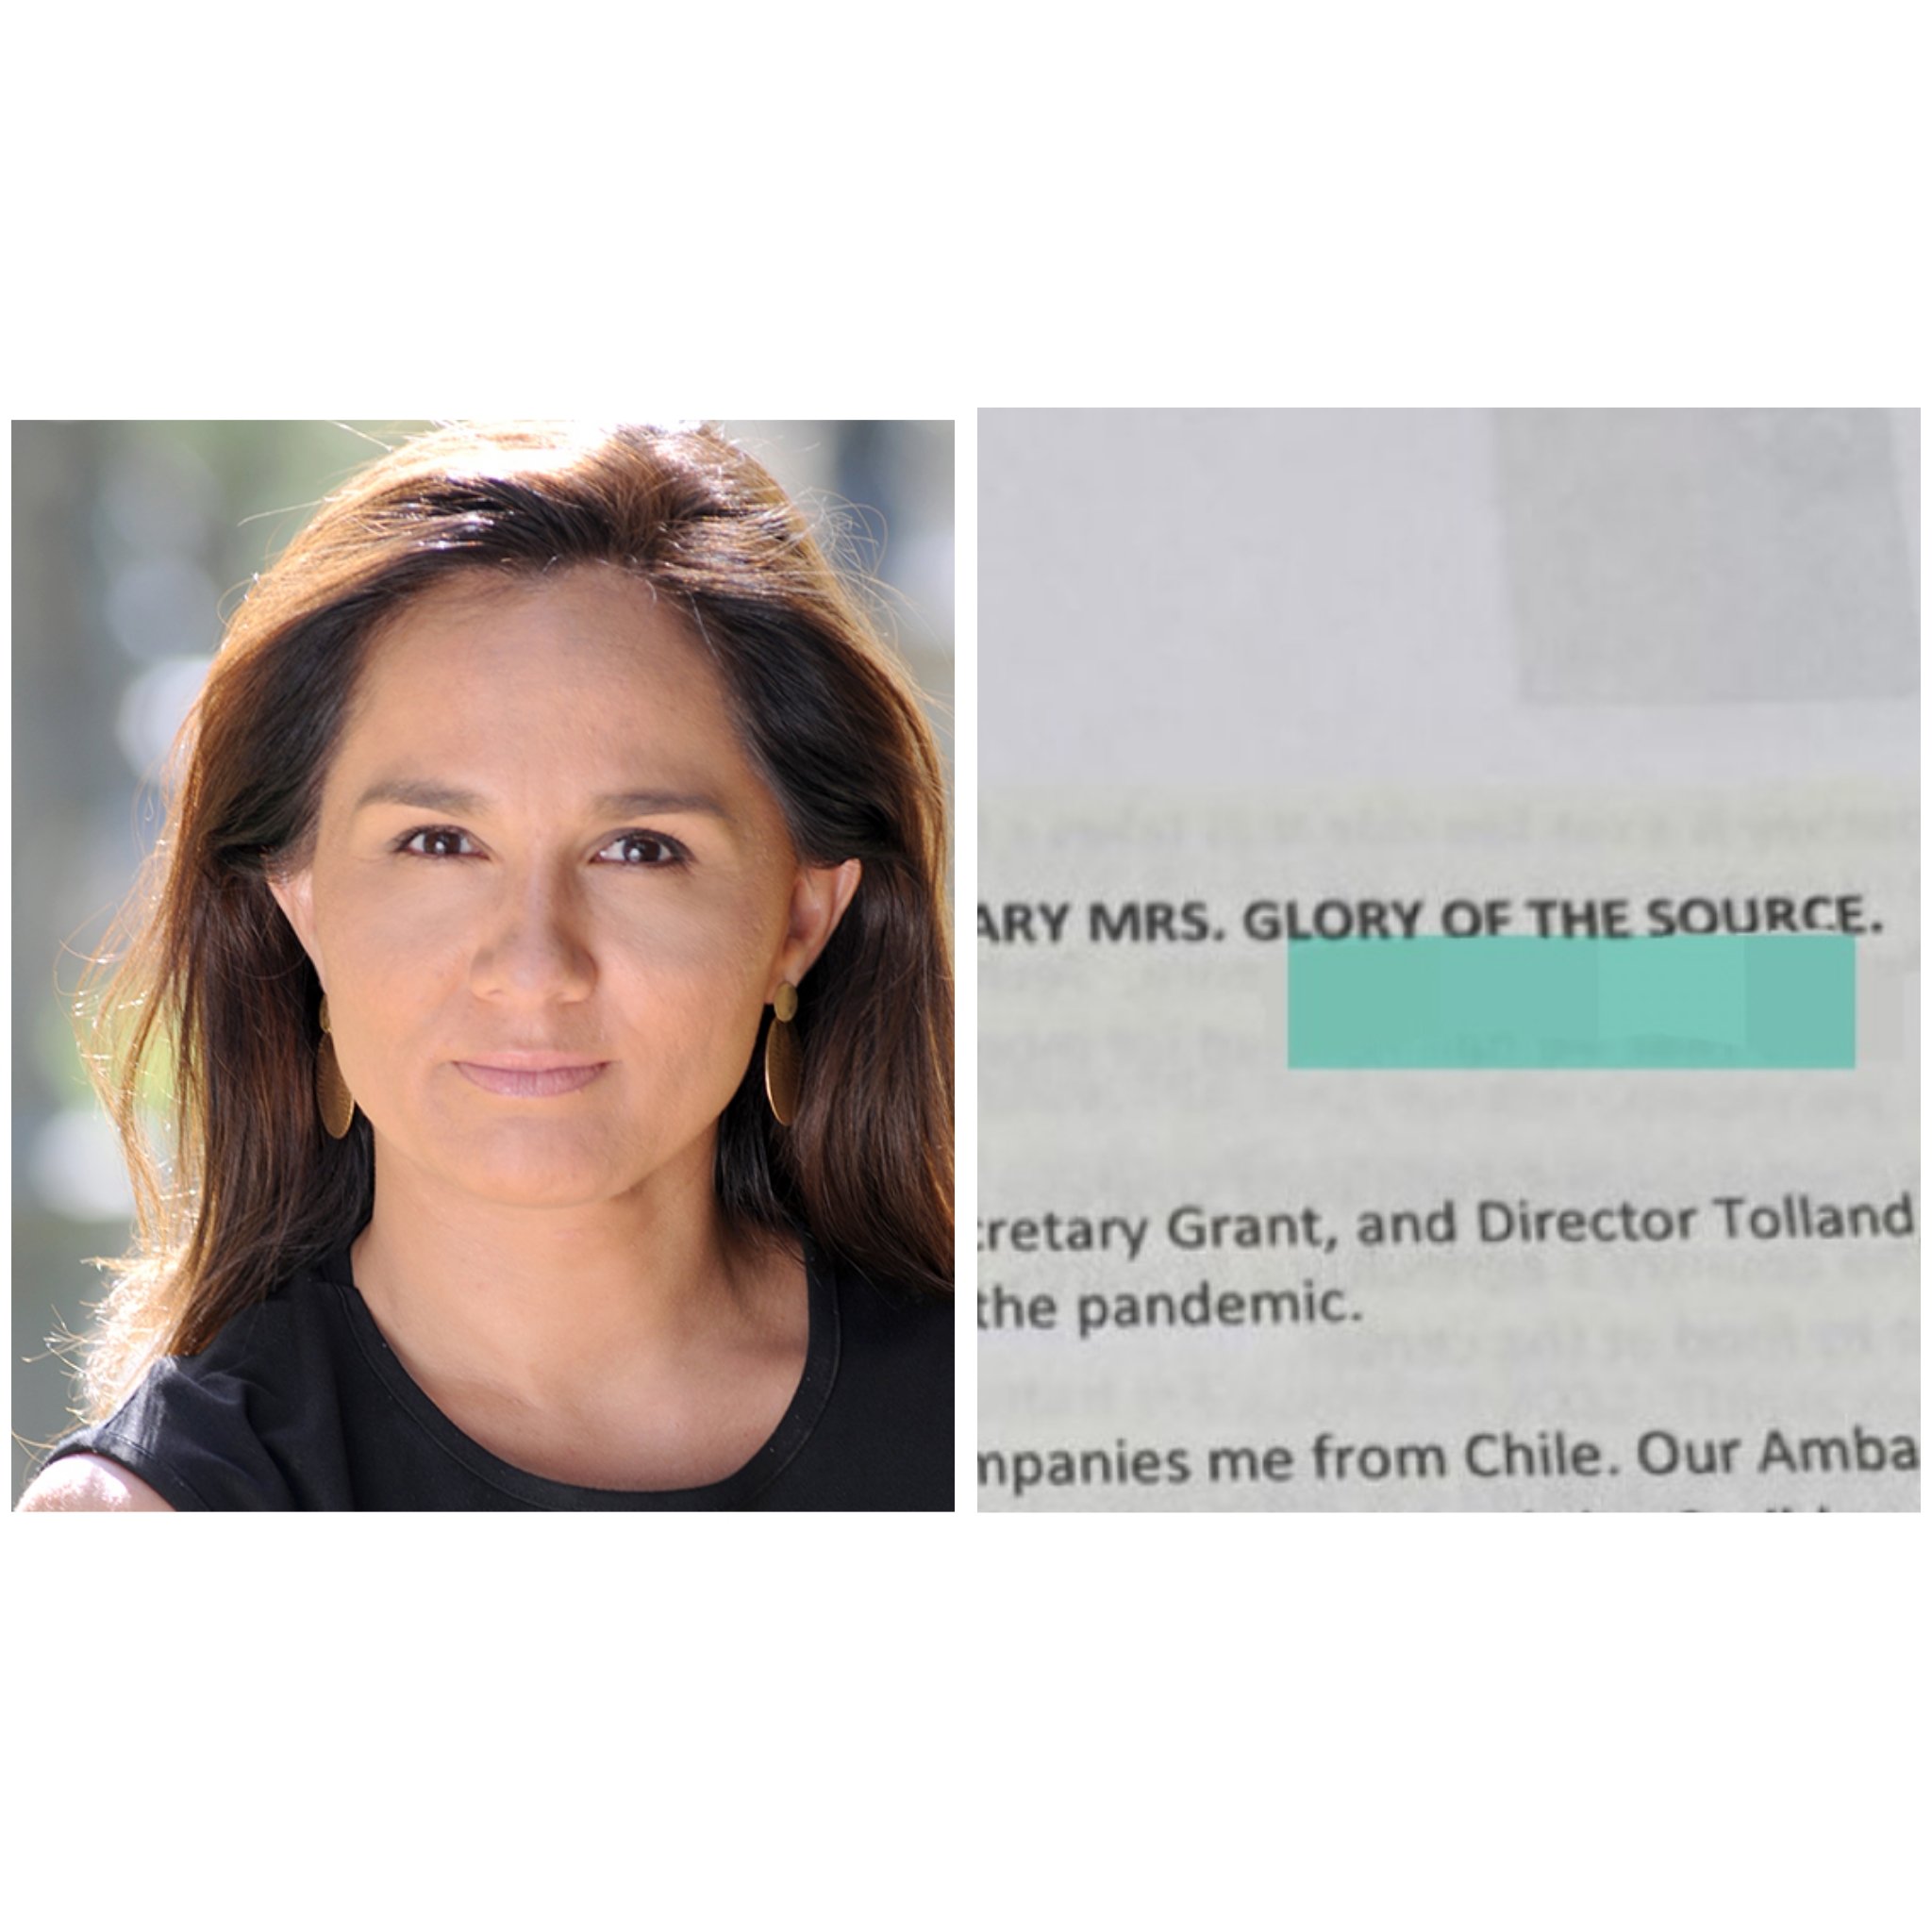 «Glory of the Source»: ¿Uso de Google para traducir nombre de subsecretaria Gloria de la Fuente en documento de Cancillería o montaje?